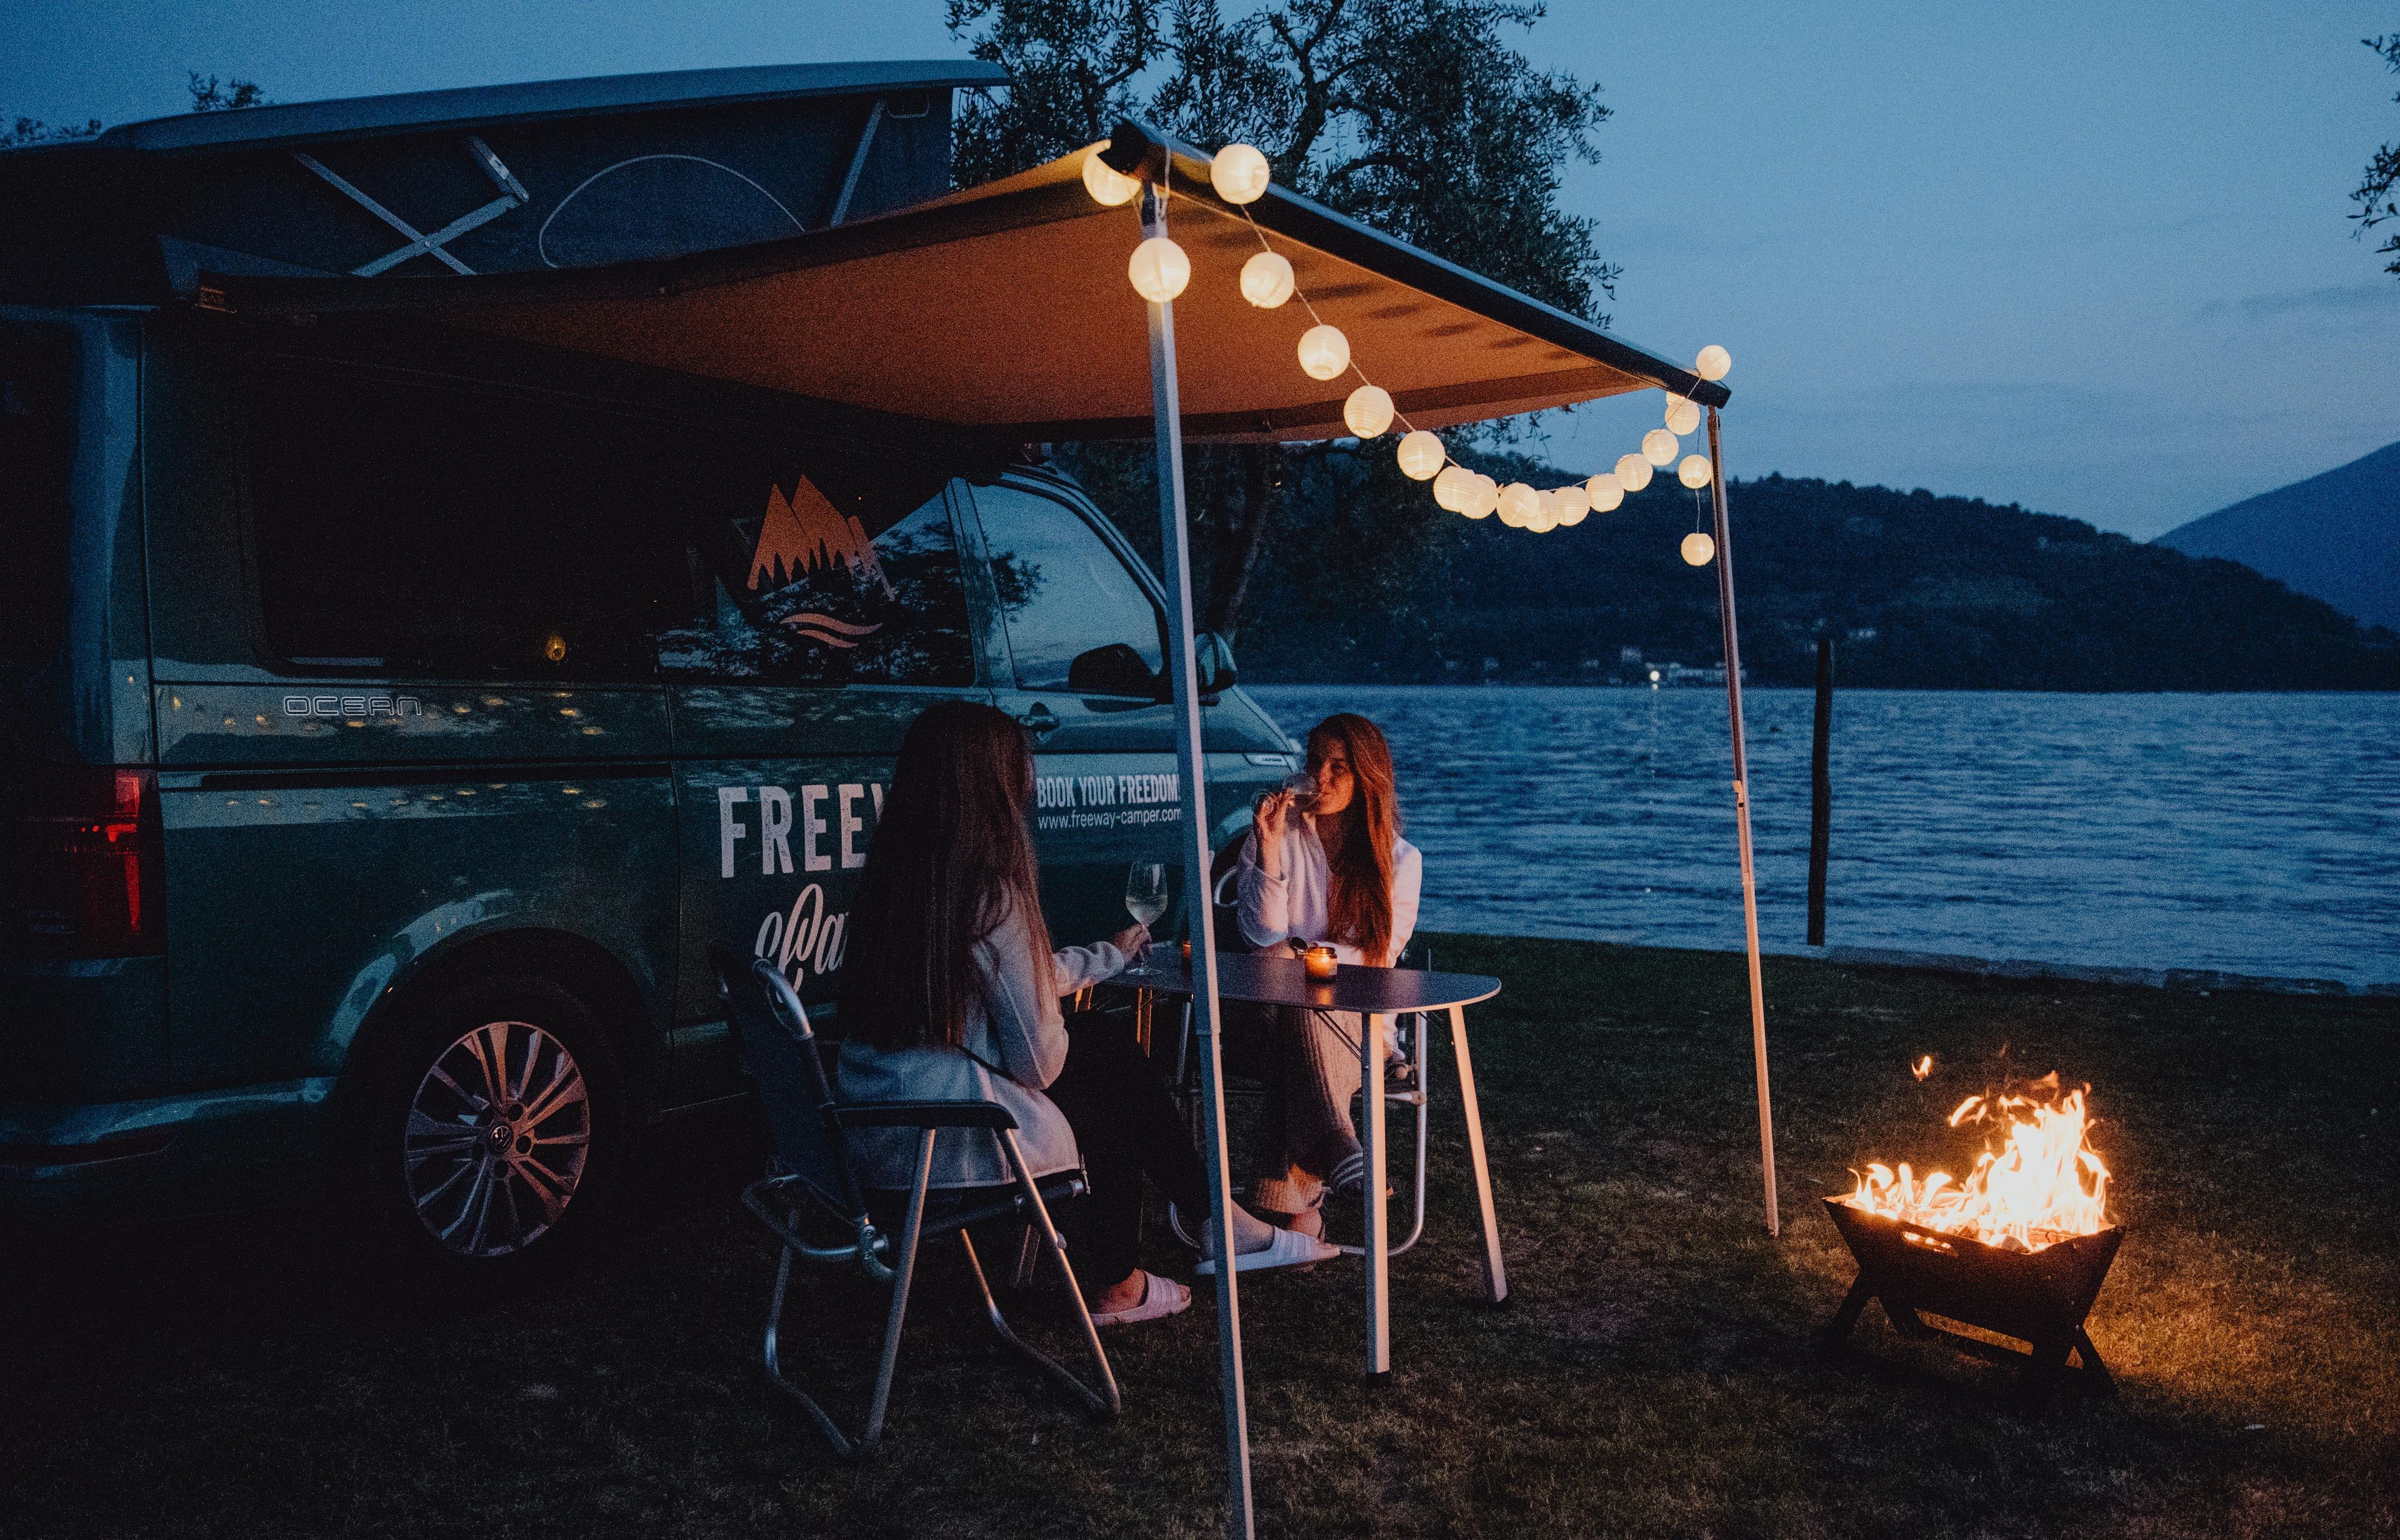 Accogliente serata tra ragazze in un viaggio in camper con luci fiabesche e caminetto in una calda sera d'estate